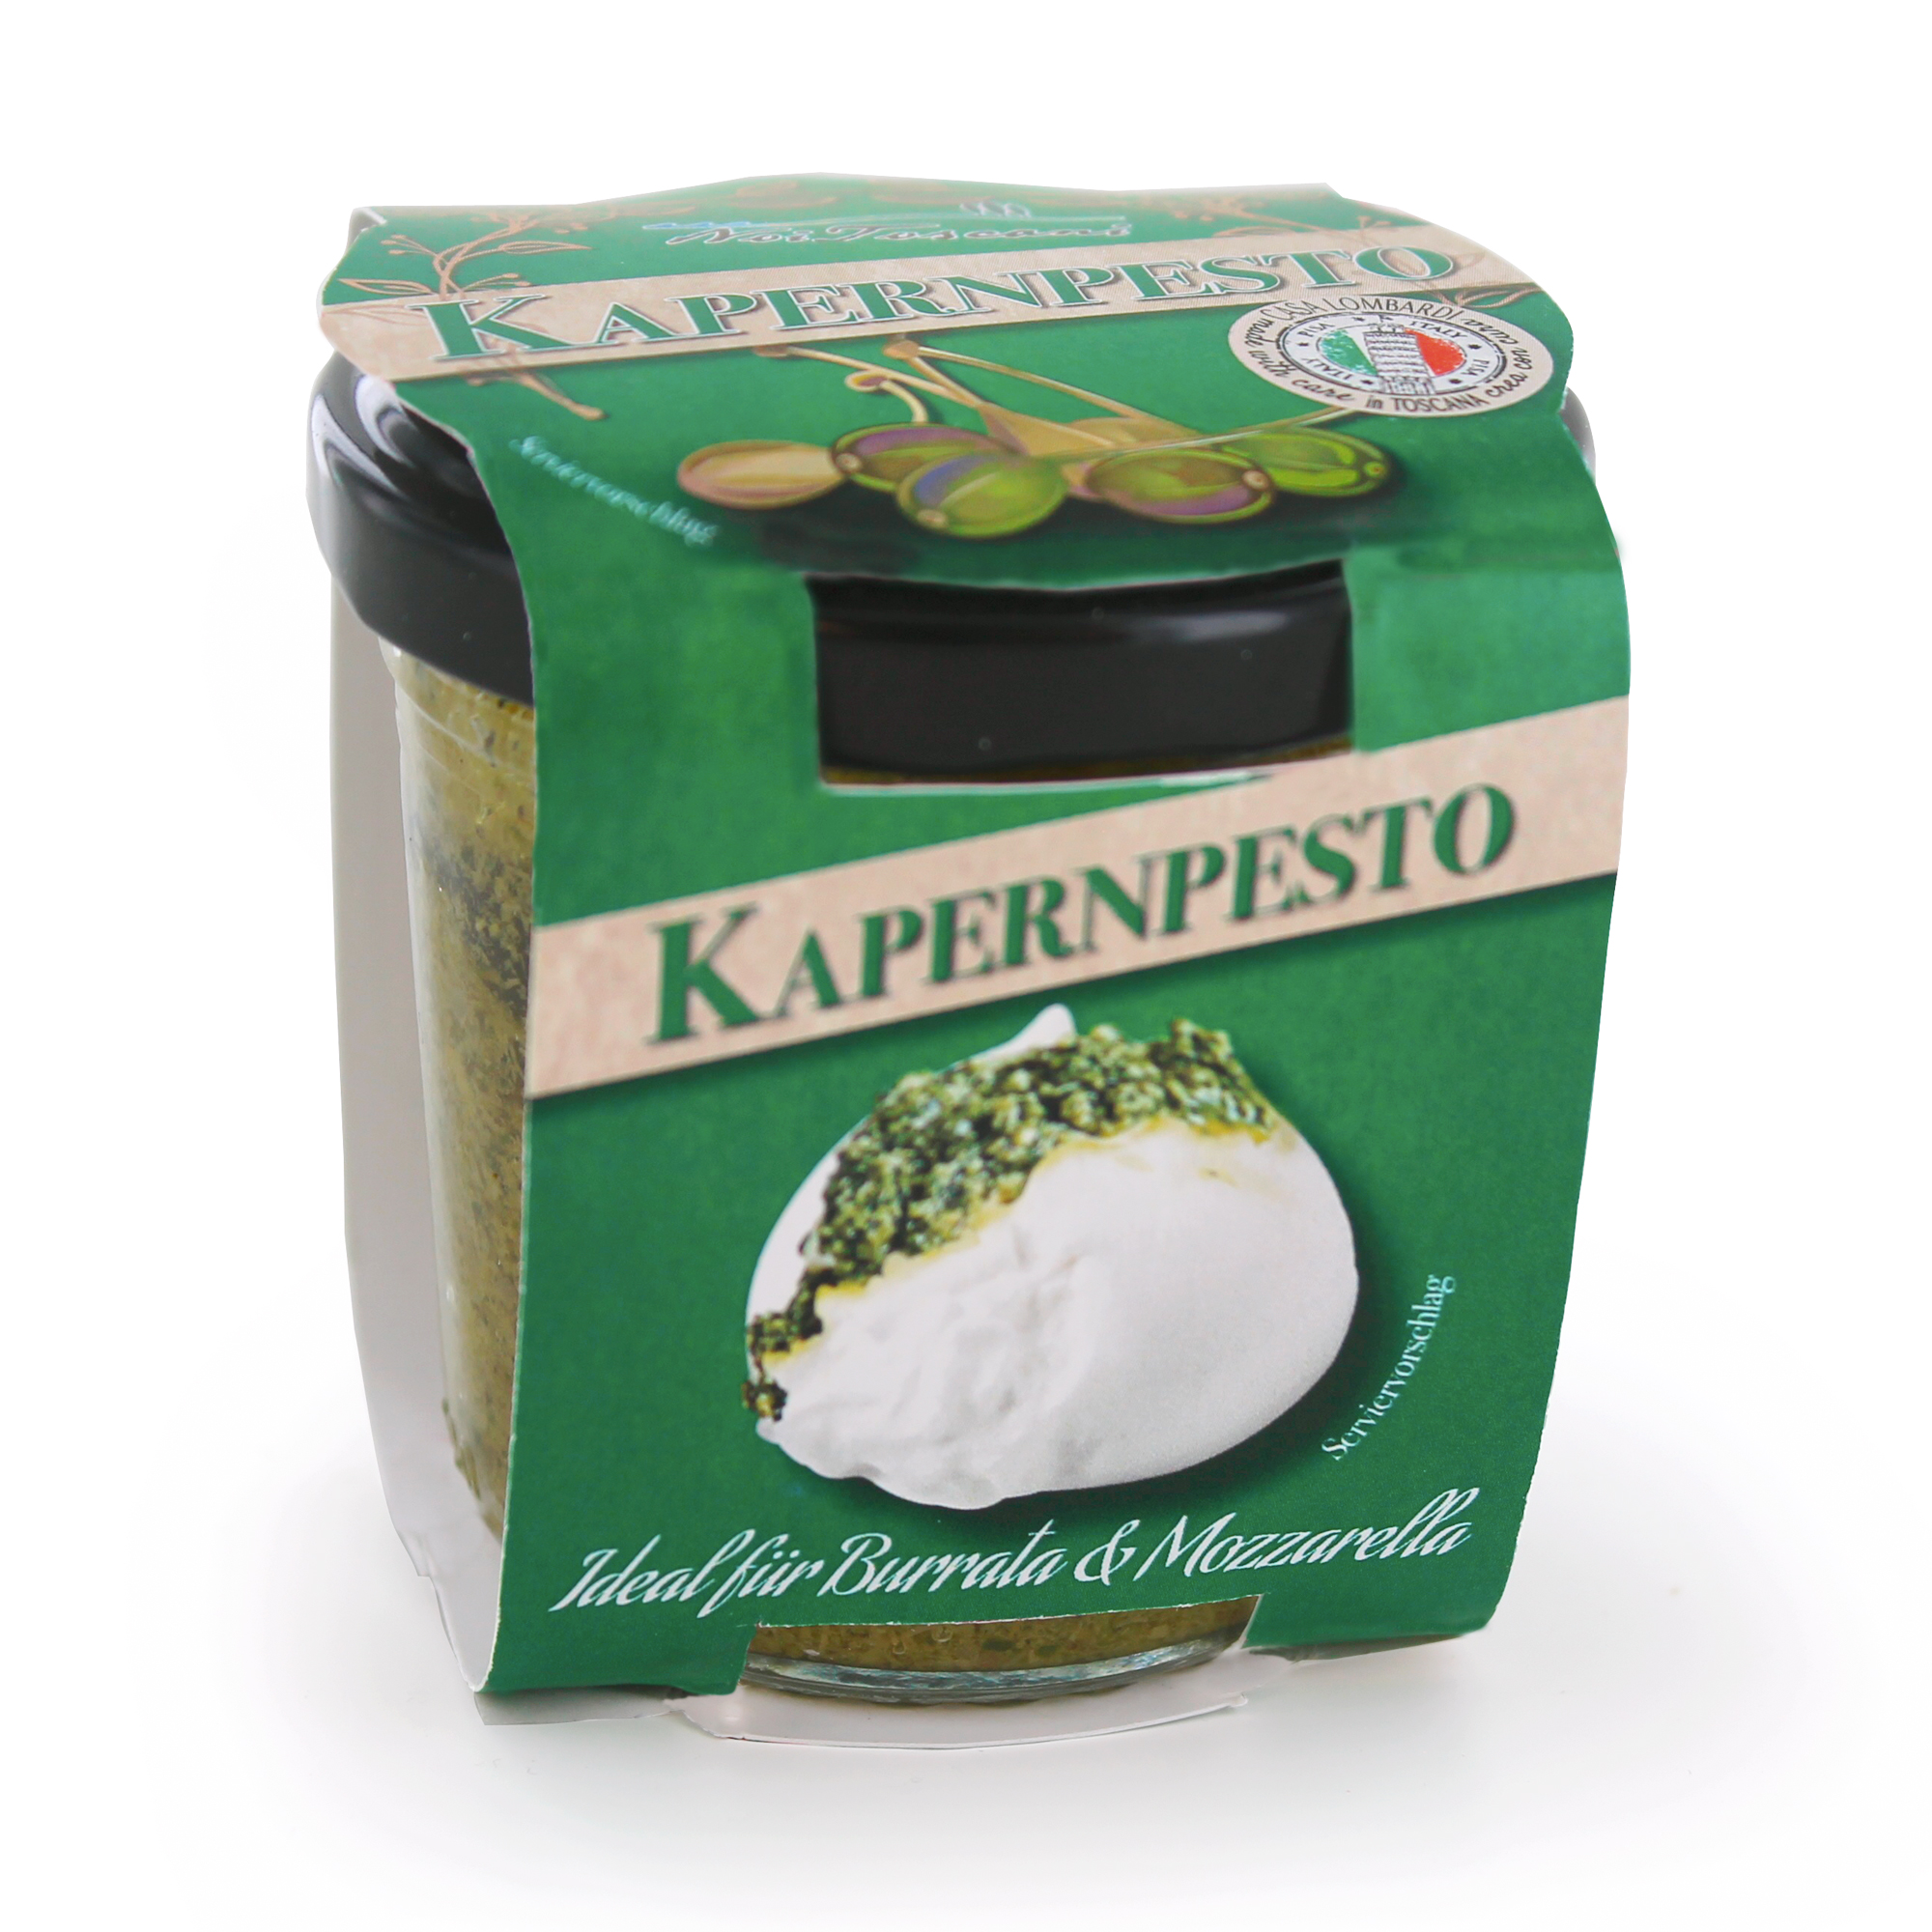 Crema Lombardi Pesto di Capperi Kapernpesto 80g